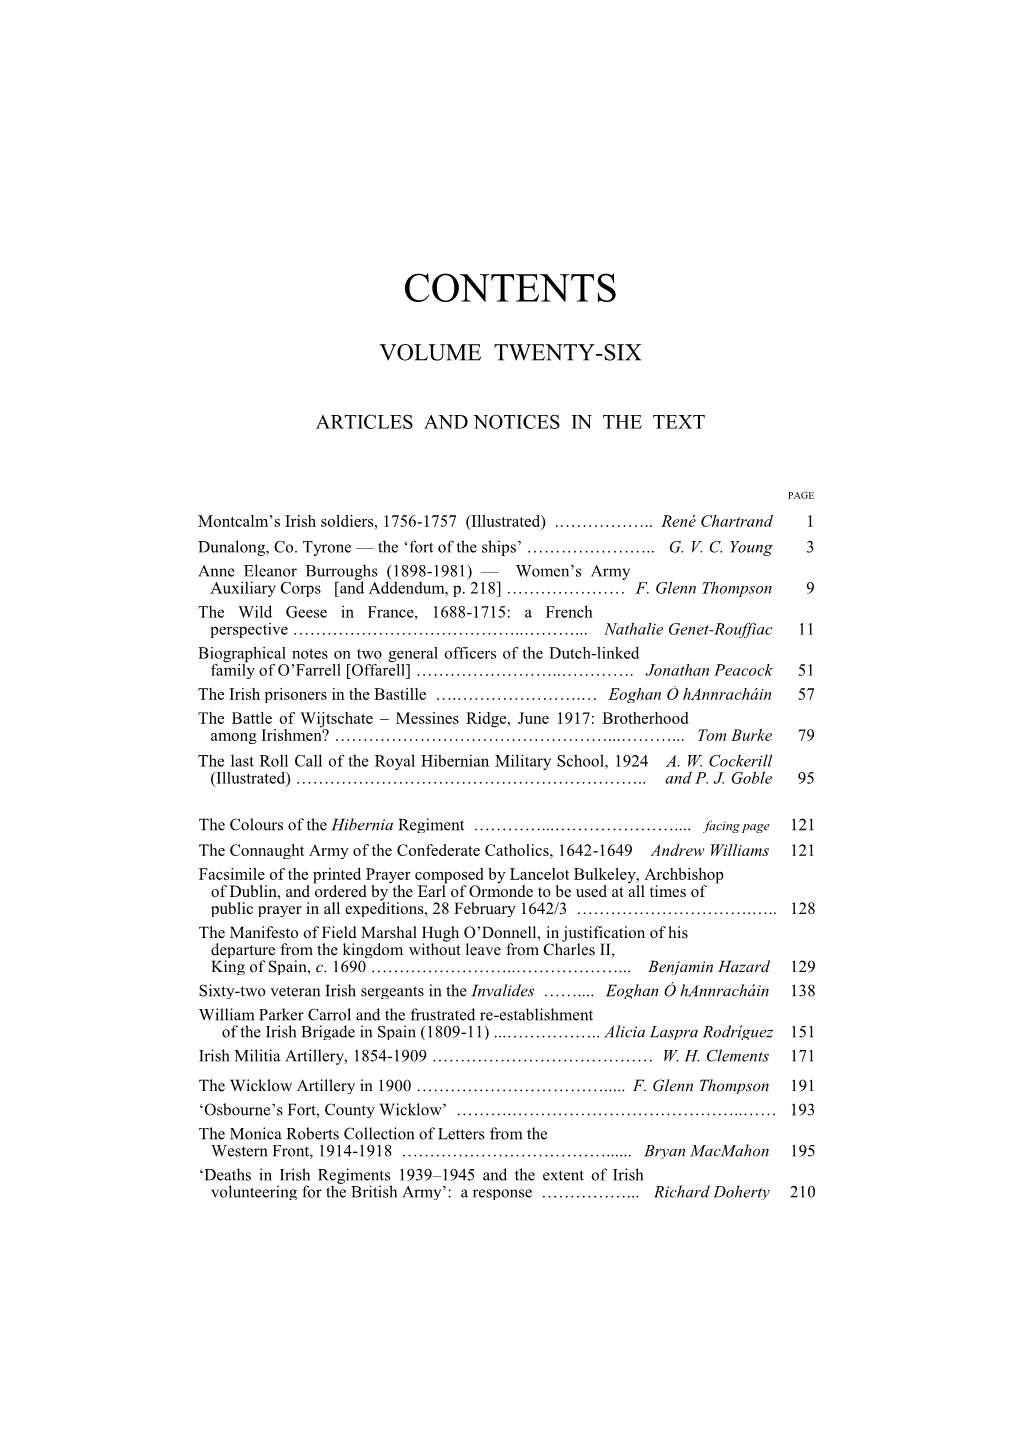 Contents Vol. XXVI 2008